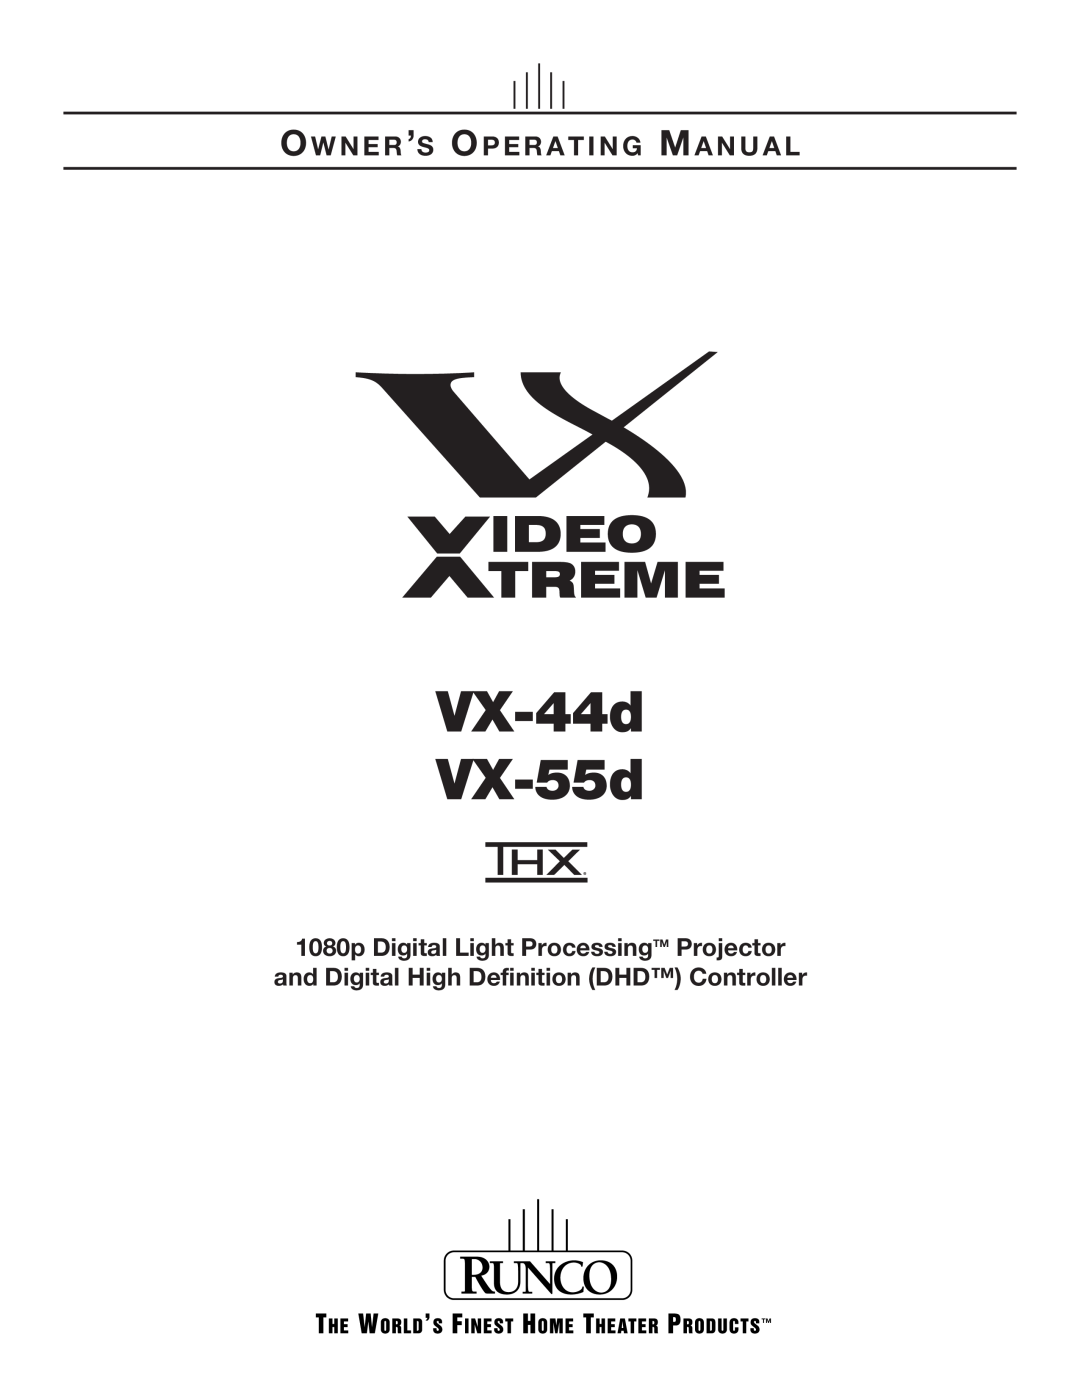 Runco 1080p manual VX-44d VX-55d, Ow N E R ’S Op E R A T I N G Ma N U A L 